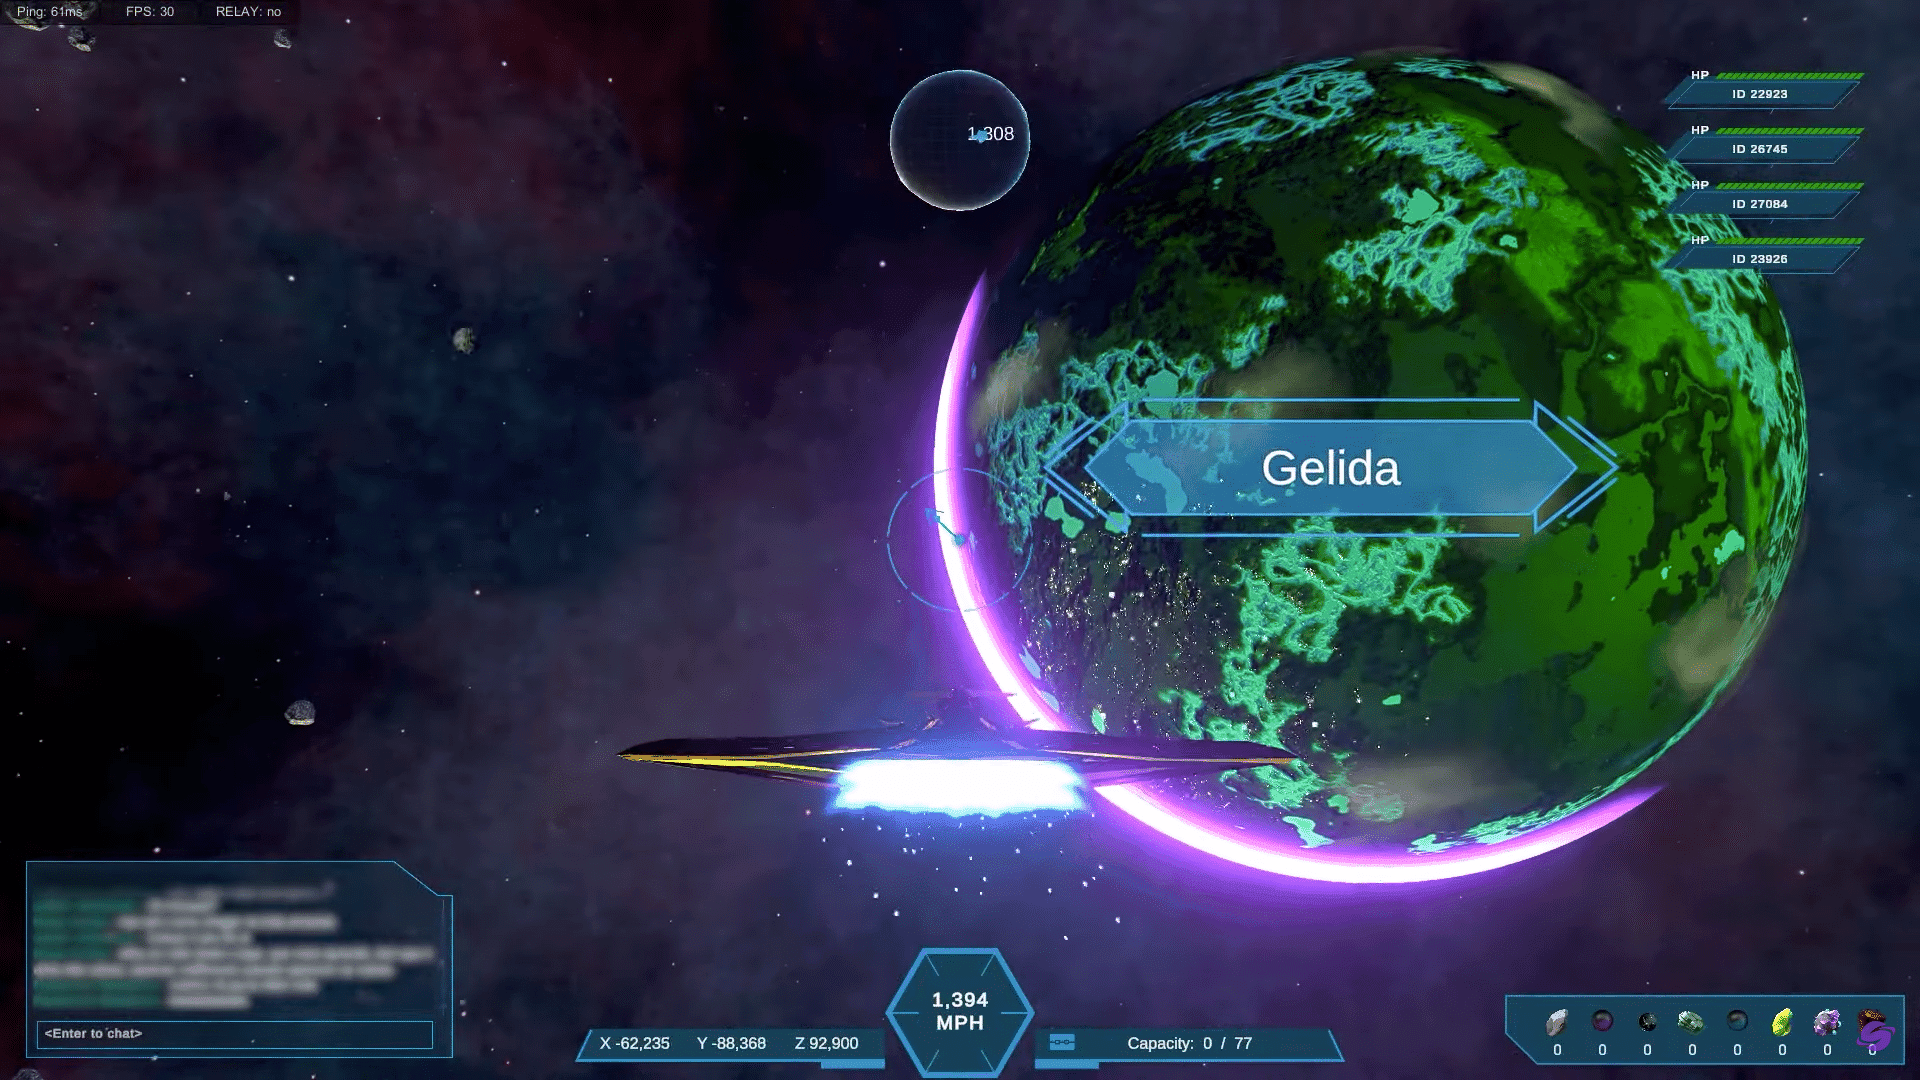 DeepSpace ist ein Blockchain-basiertes Weltraum-Metaversum, das Play-to-Earn. Spieler erschaffen Zivilisationen, erobern Gebiete und wagen sich in kosmische Bereiche vor.